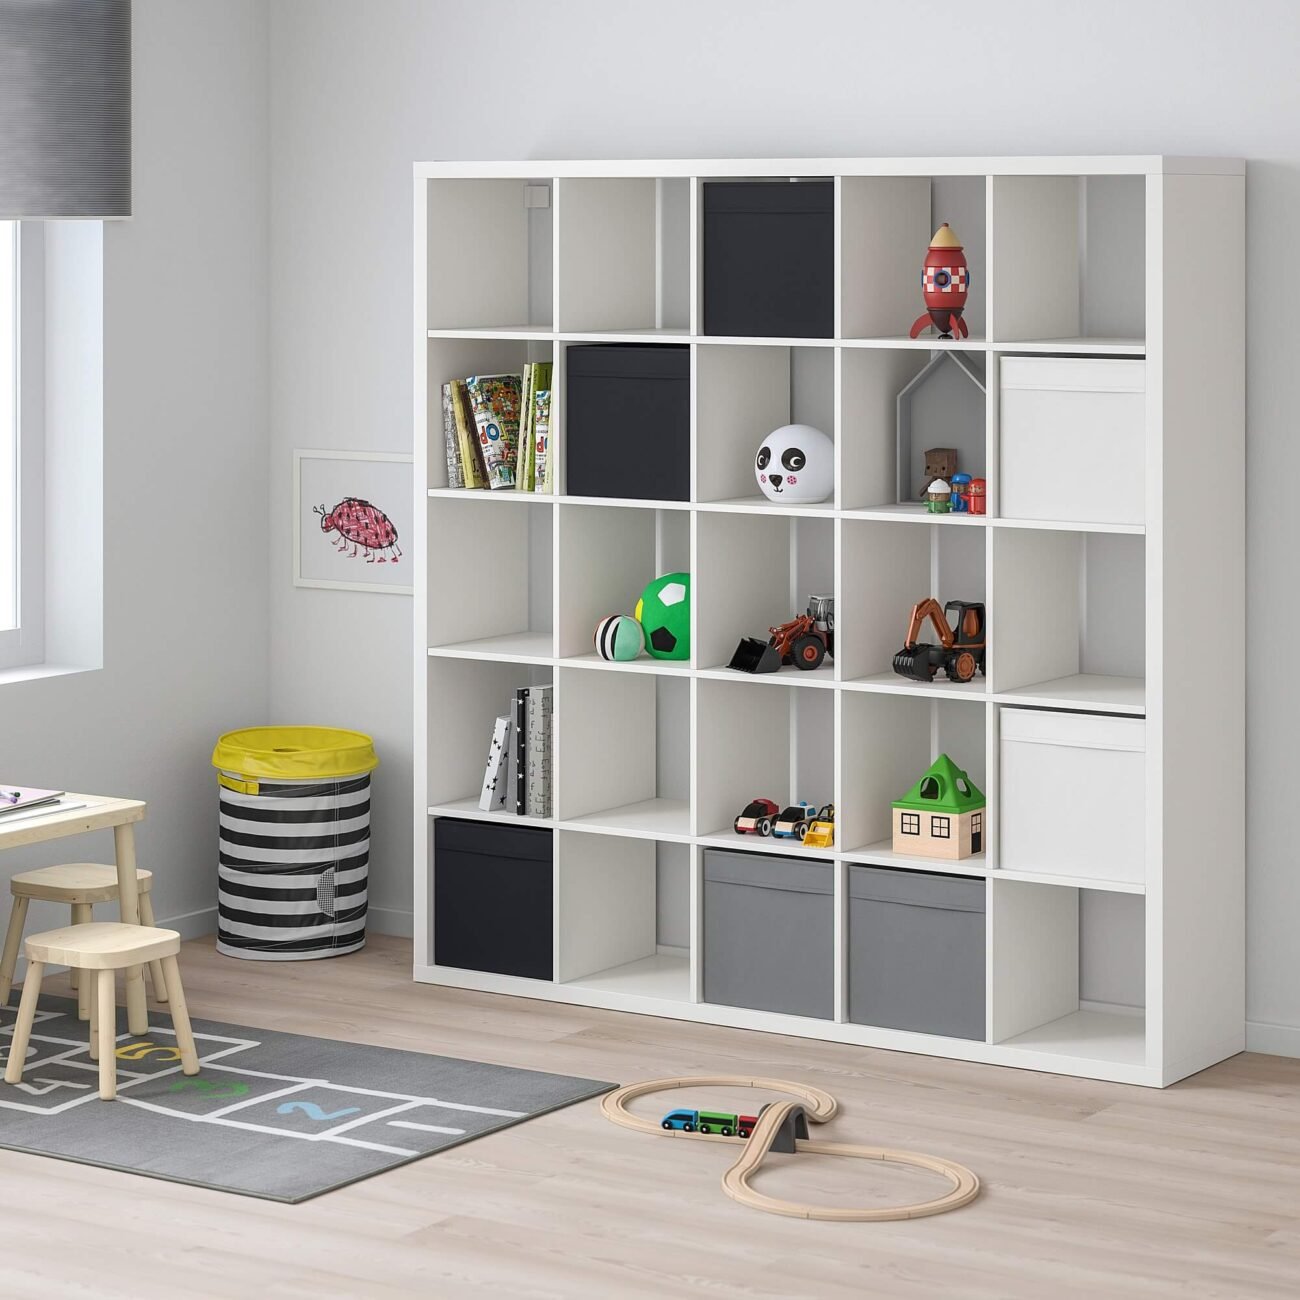 IKEA Effekt Produktdesign für Modulare Produkte